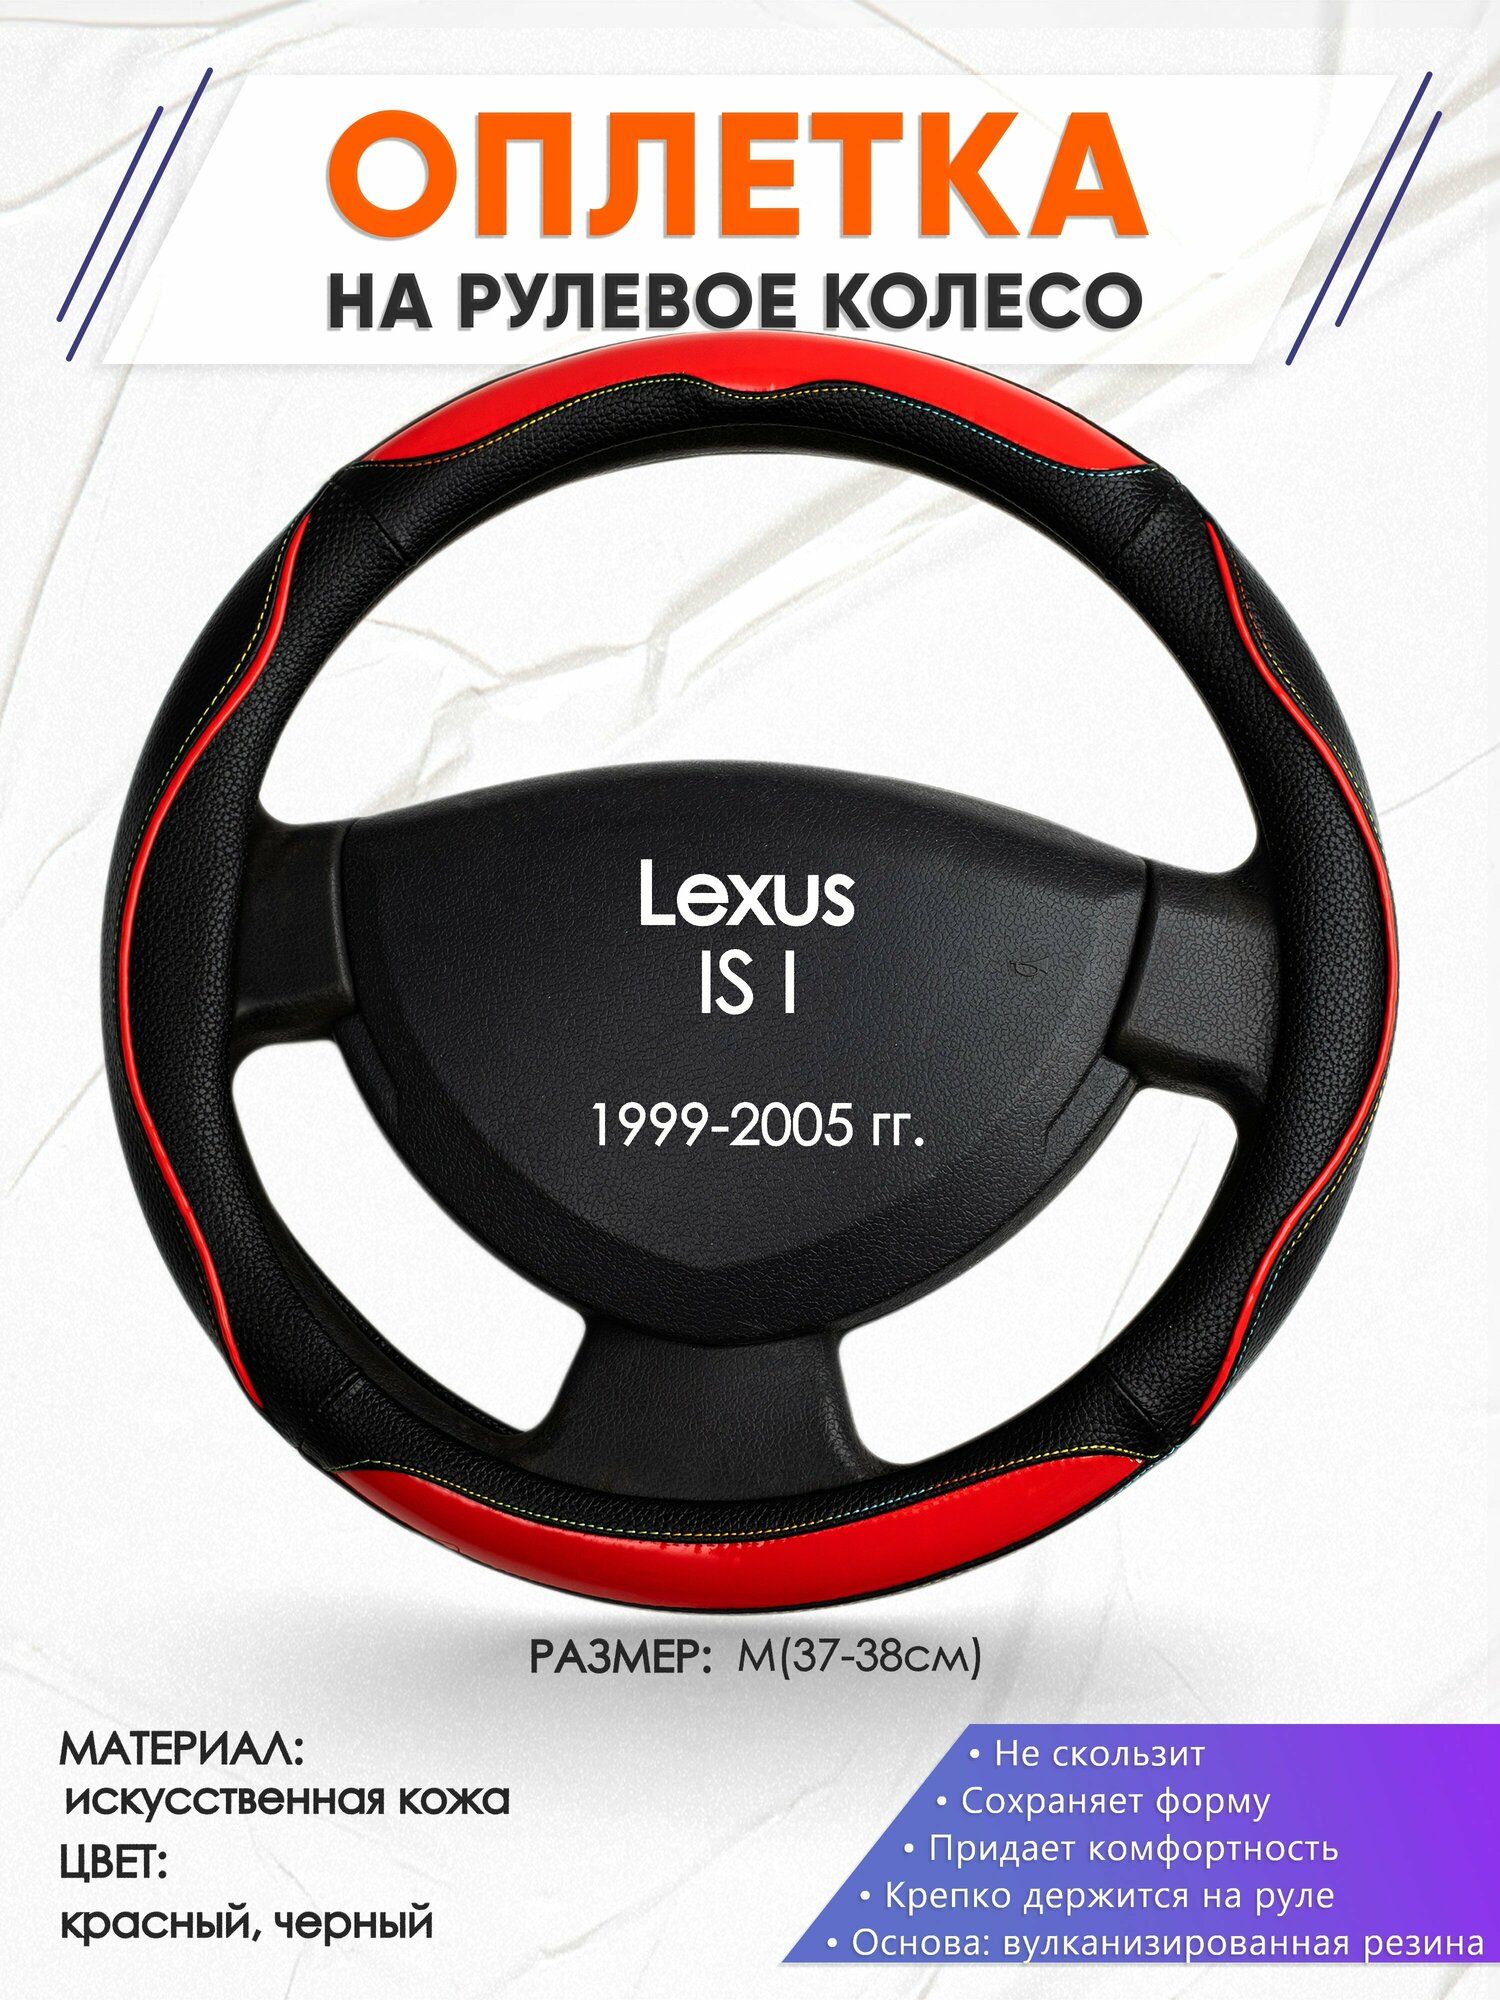 Оплетка наруль для Lexus IS I(Лексус ИС 1) 1999-2005 годов выпуска, размер M(37-38см), Искусственная кожа 77